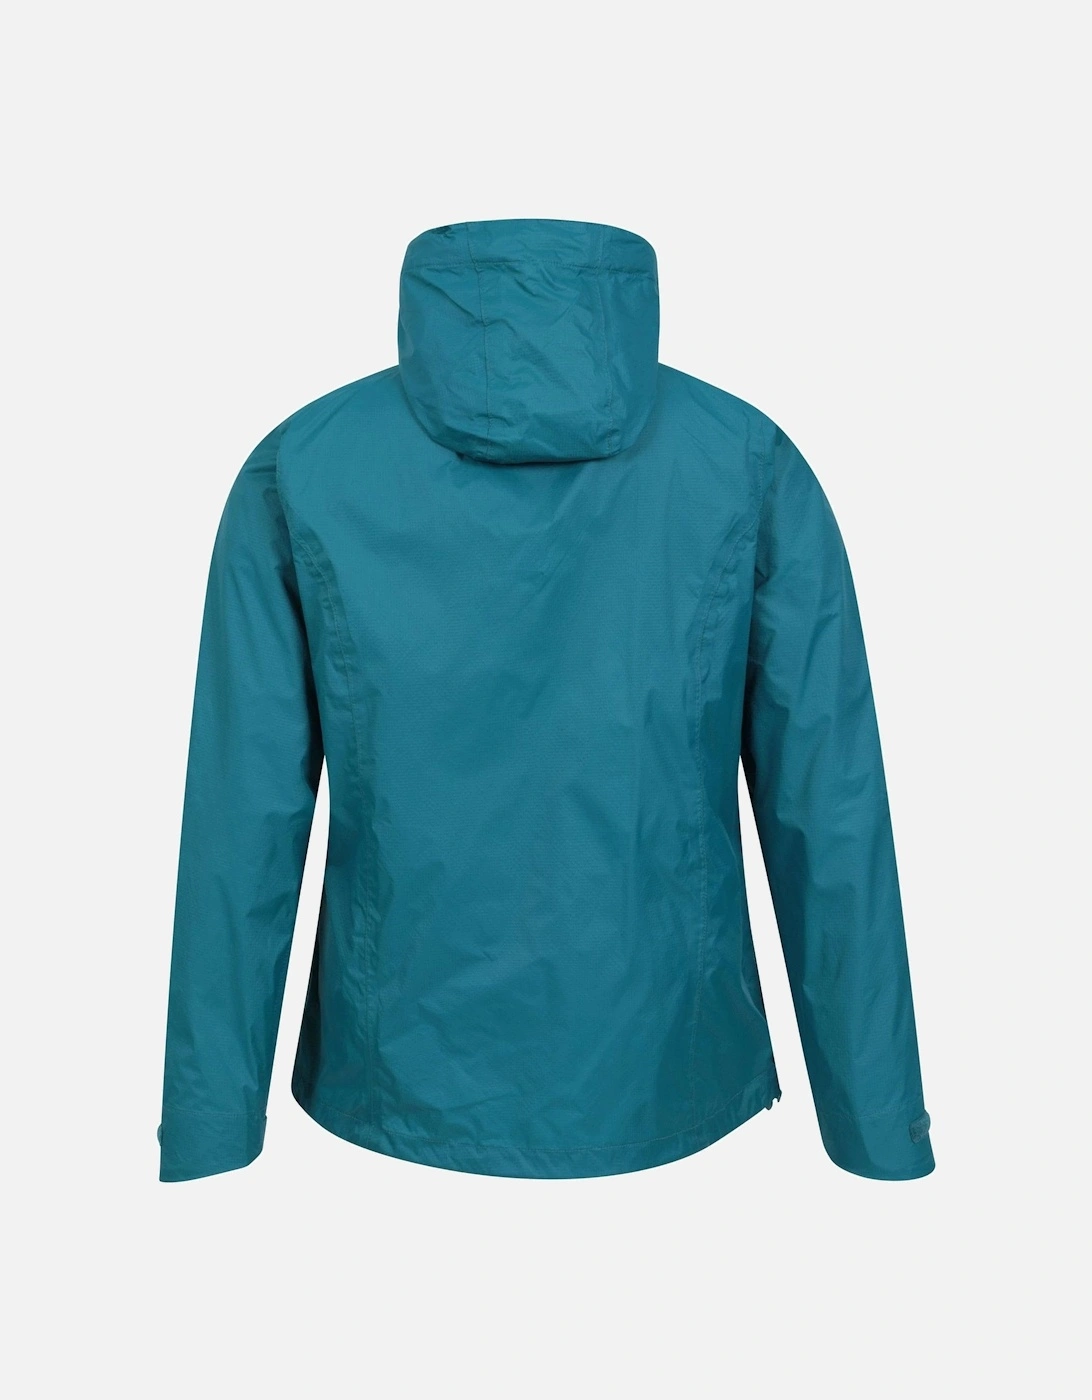 Womens/Ladies Swerve Packaway Waterproof Jacket, 6 of 5